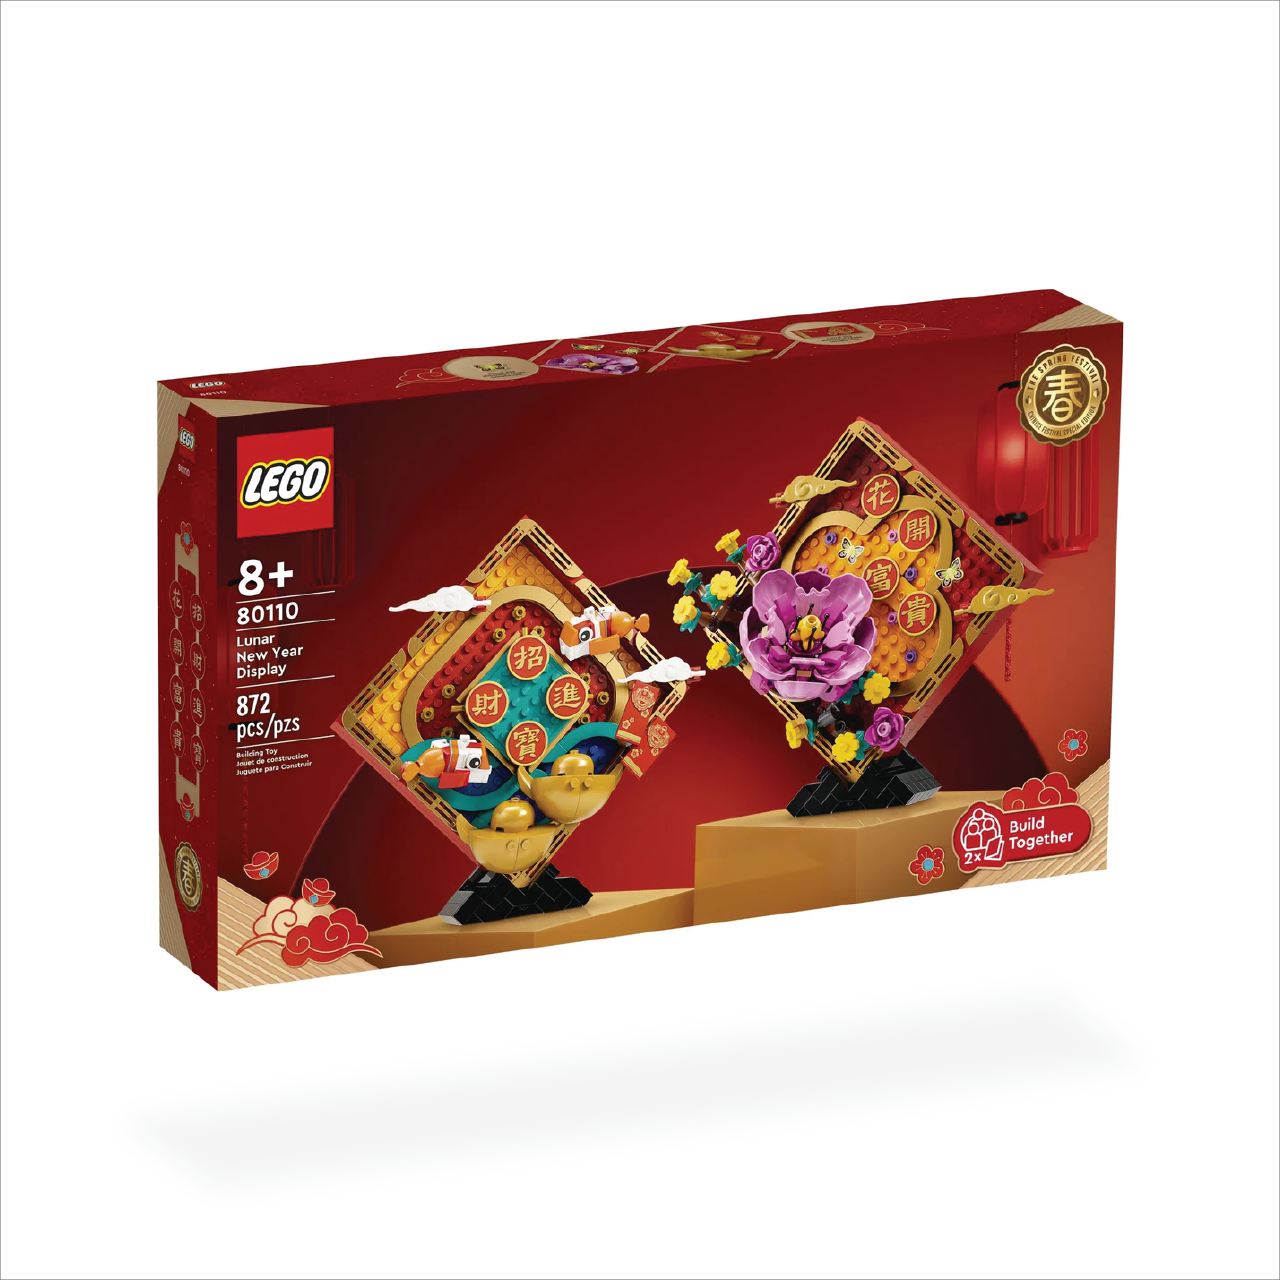 LEGO 80110 Lunar New Year Display